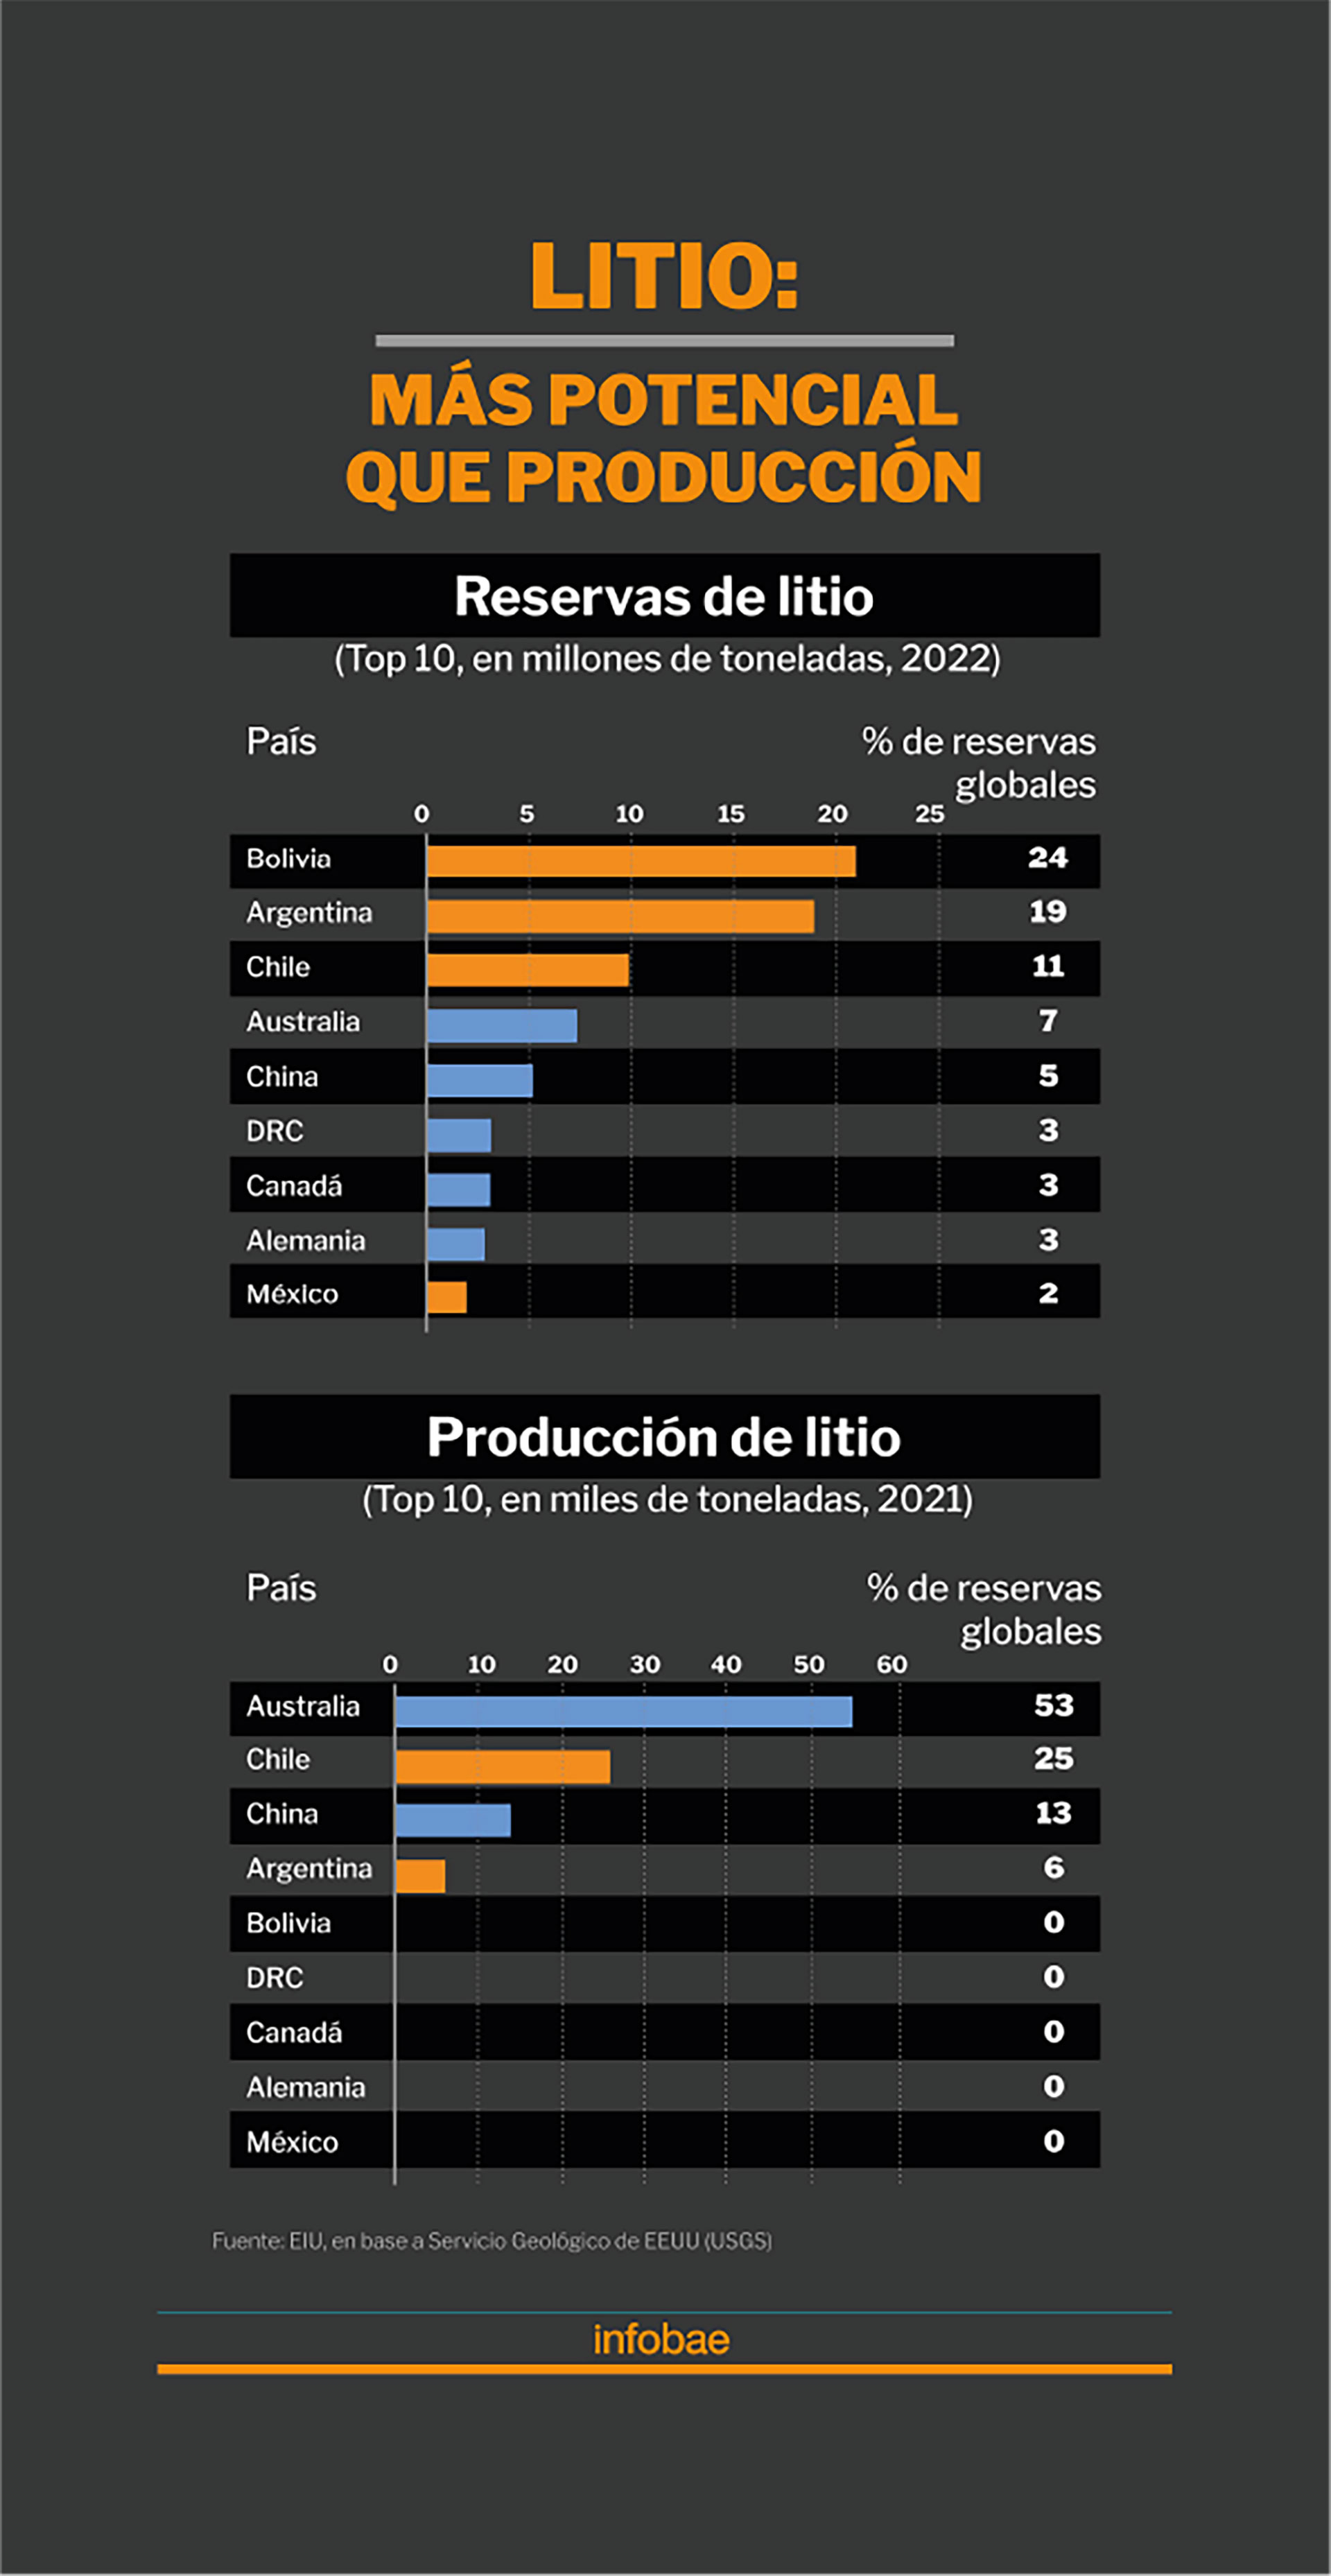 Sudamérica tiene el "triángulo del litio" integrado por Argentina, Bolivia y Chile. Pero, como muestra el gráfico, reservas y producción no siempre van de la mano